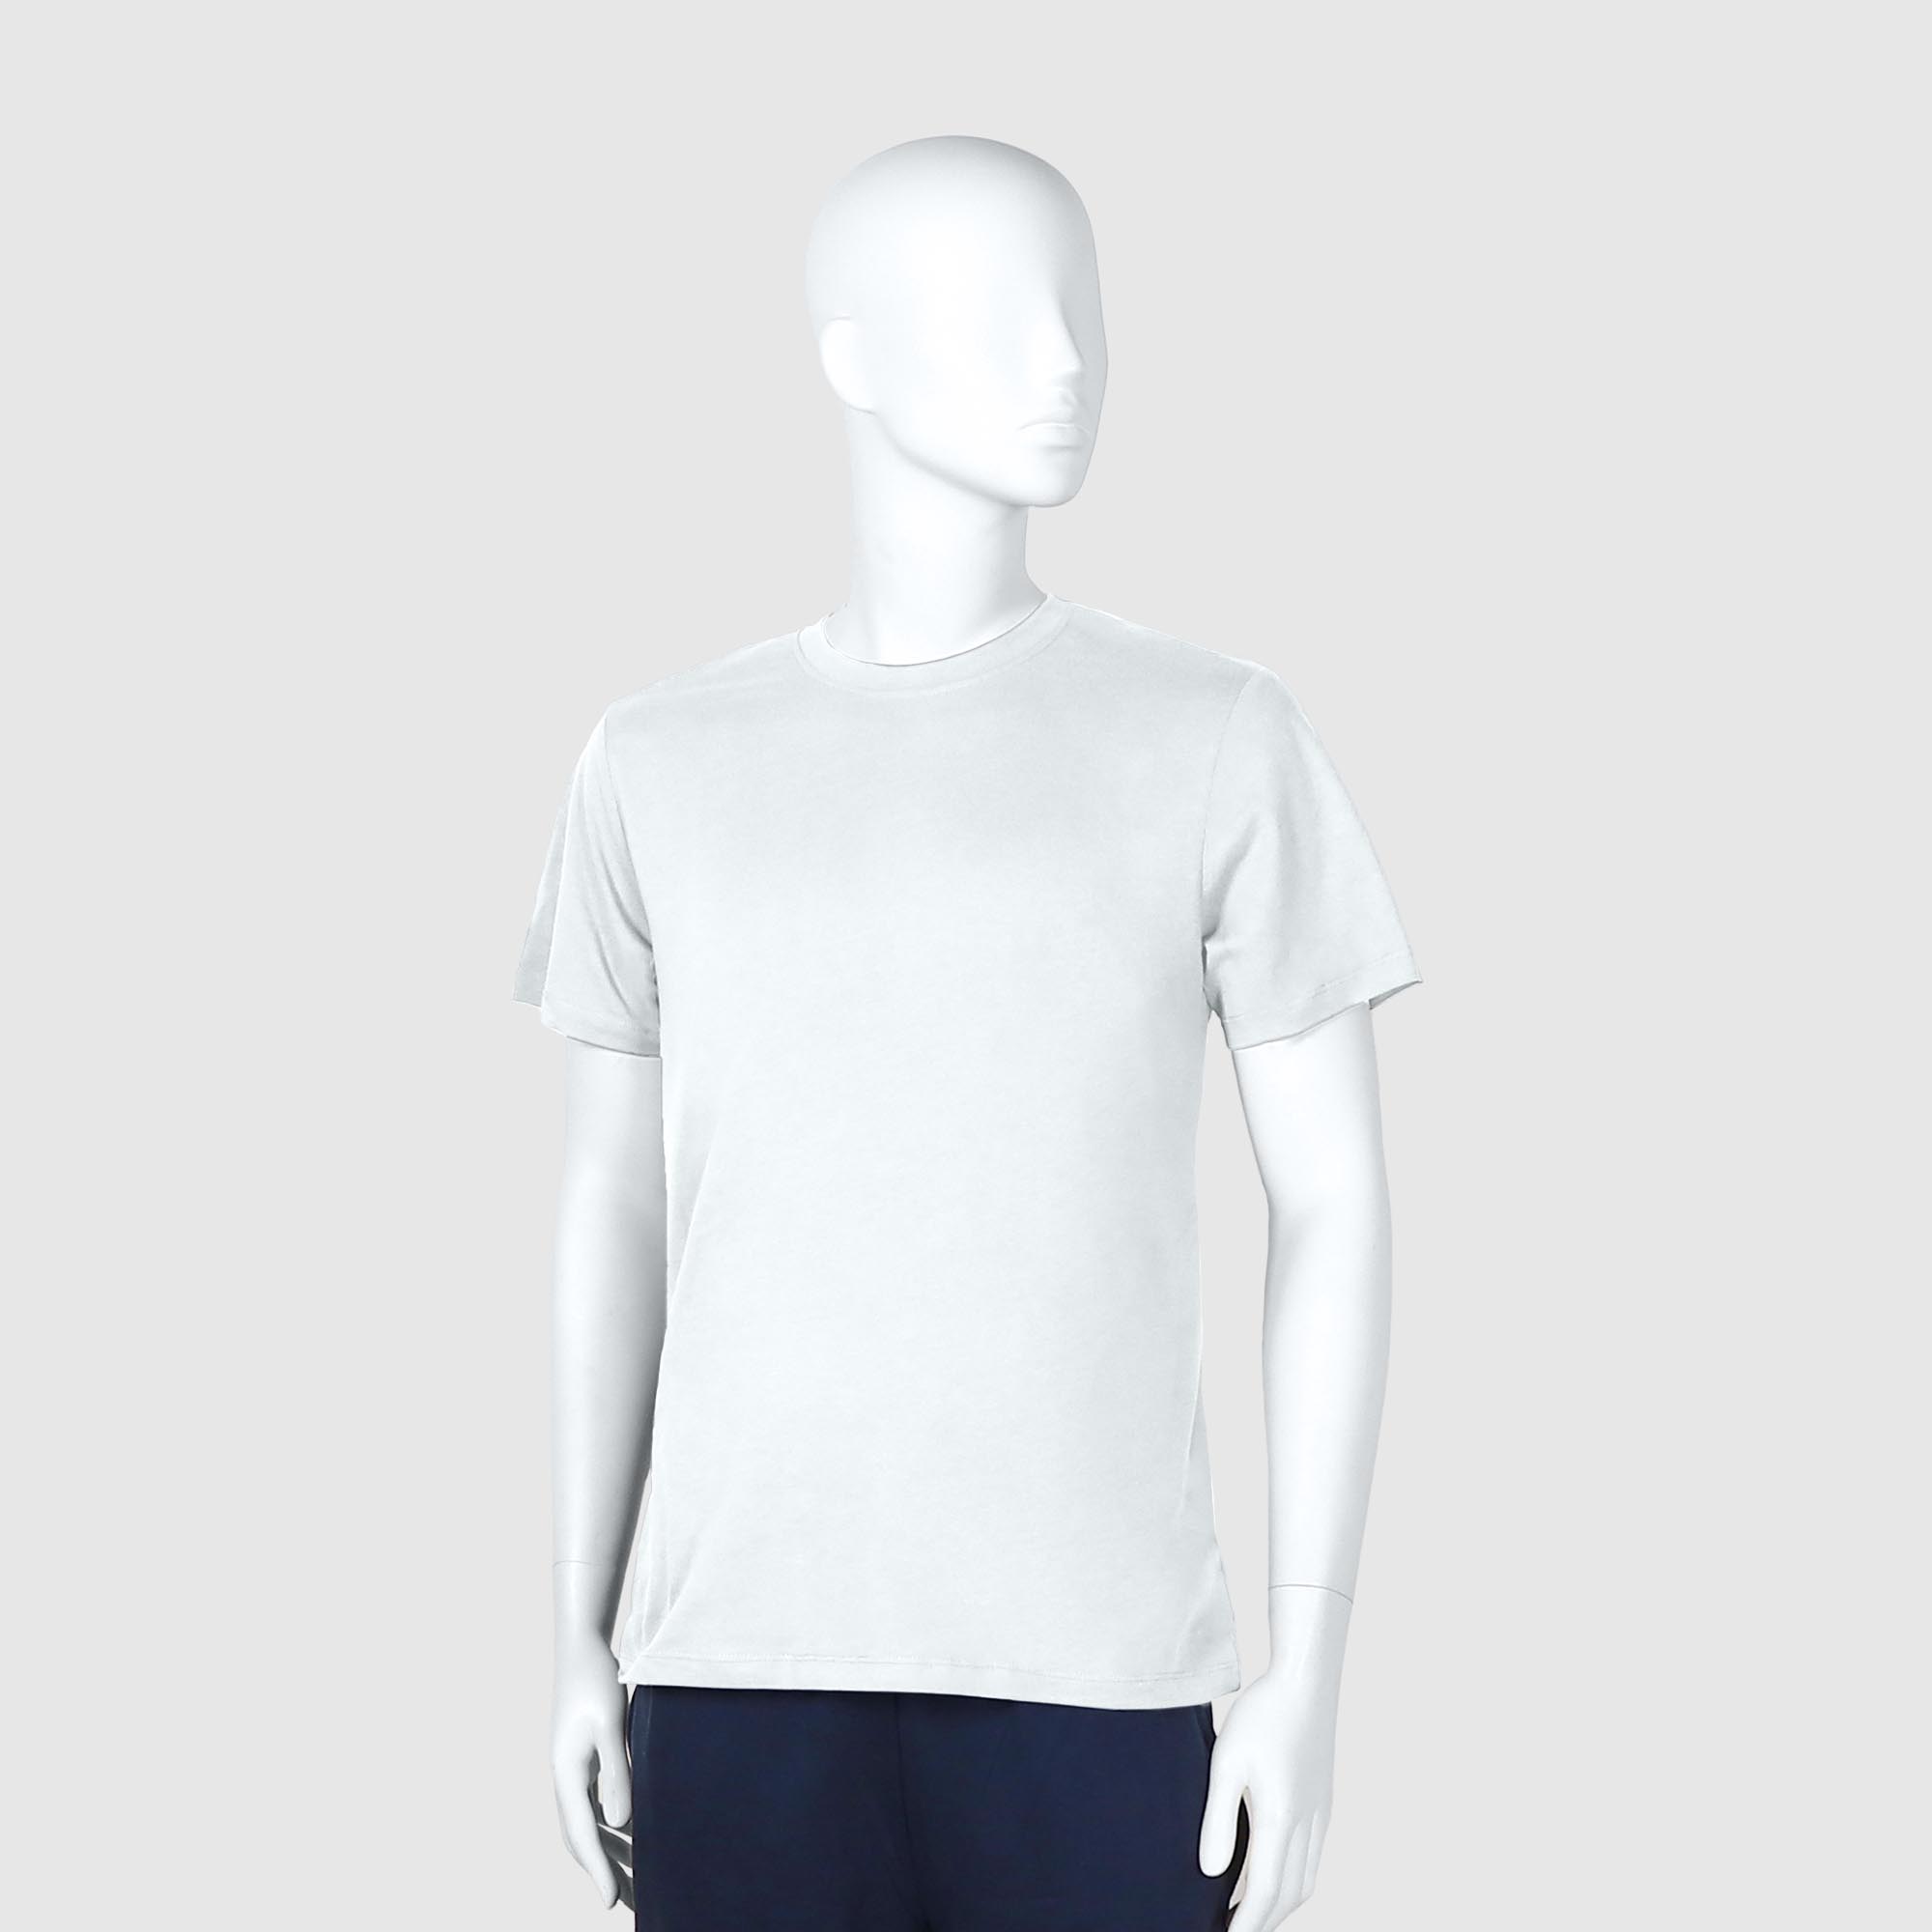 Мужская футболка Diva Teks белая (DTD-02), цвет белый, размер 40-52